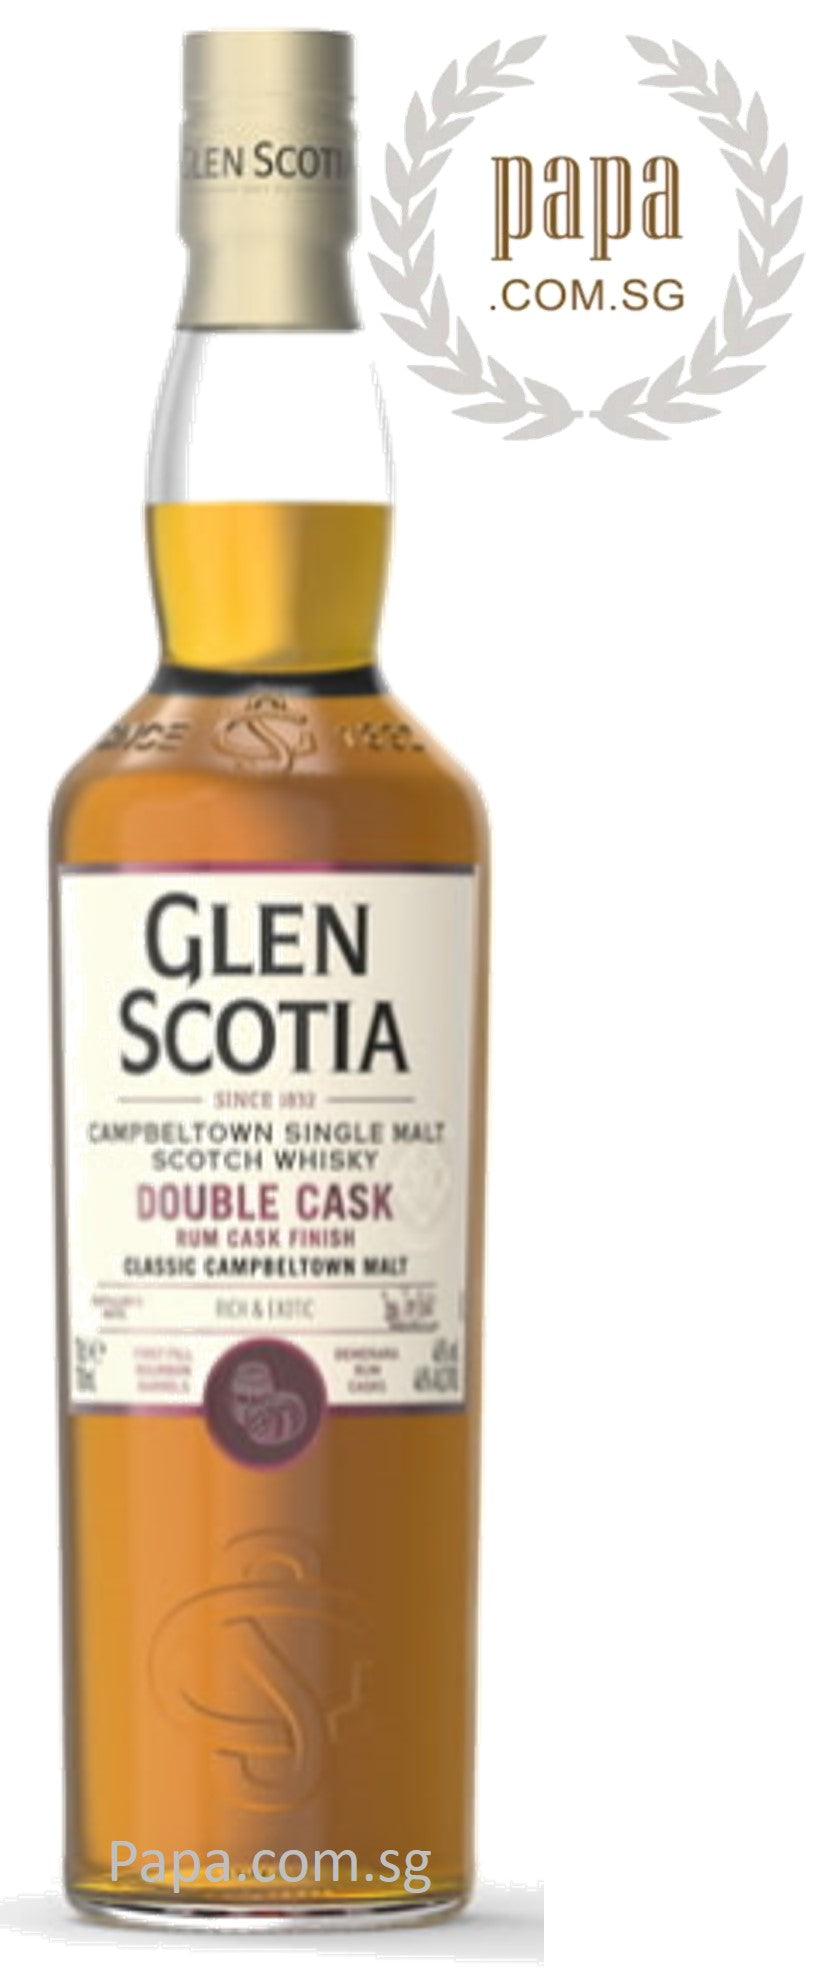 Glen Scotia Double Cask Single Malt - Campbeltown - 46% abv